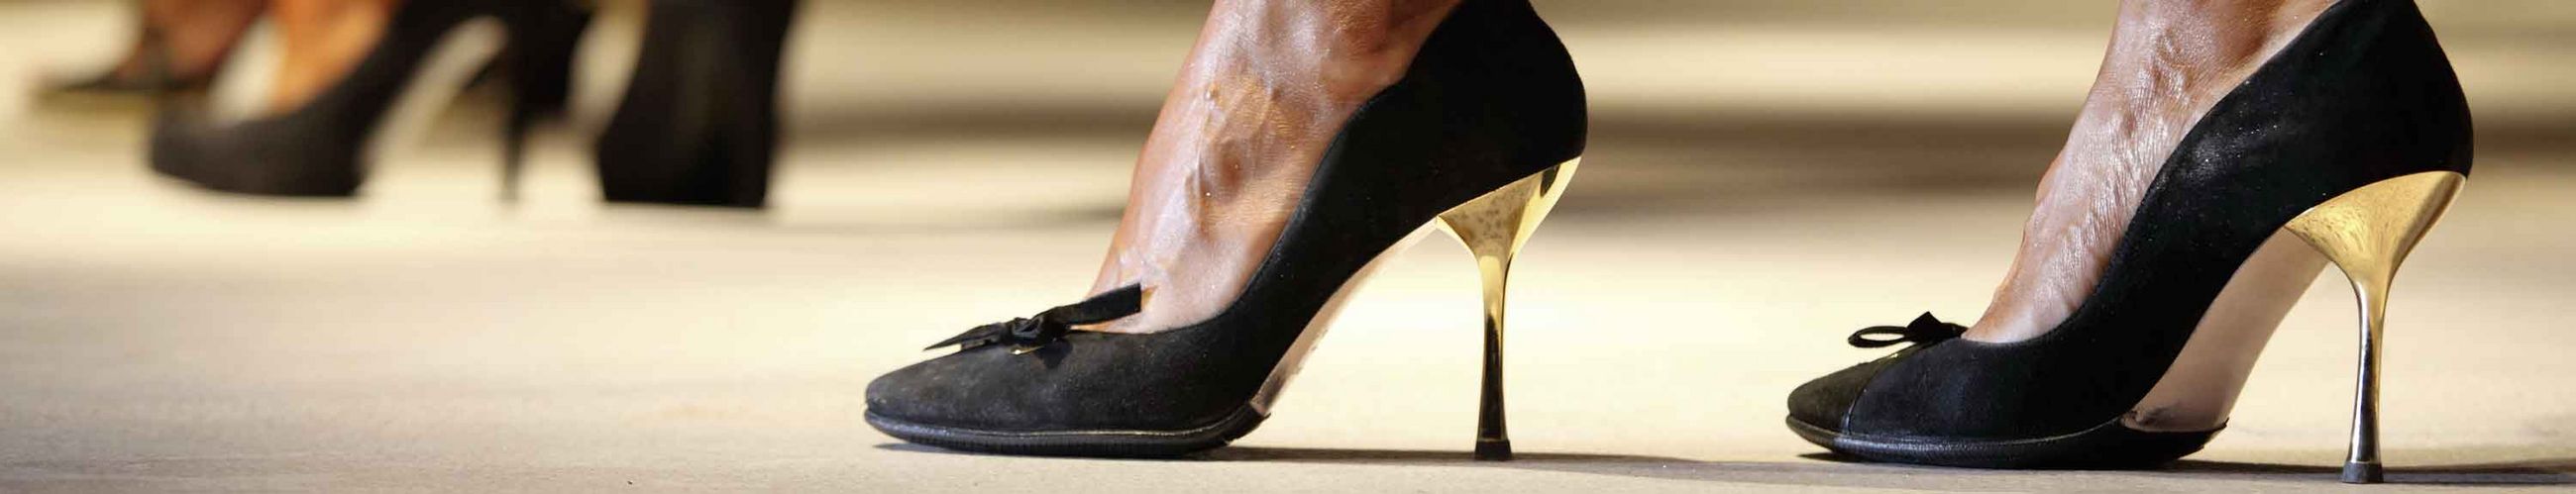 Das Bild zeigt die Füße einer Frau in hohen, schwarzen Schuhen, im Hintergrund sieht man verschwommen weitere.